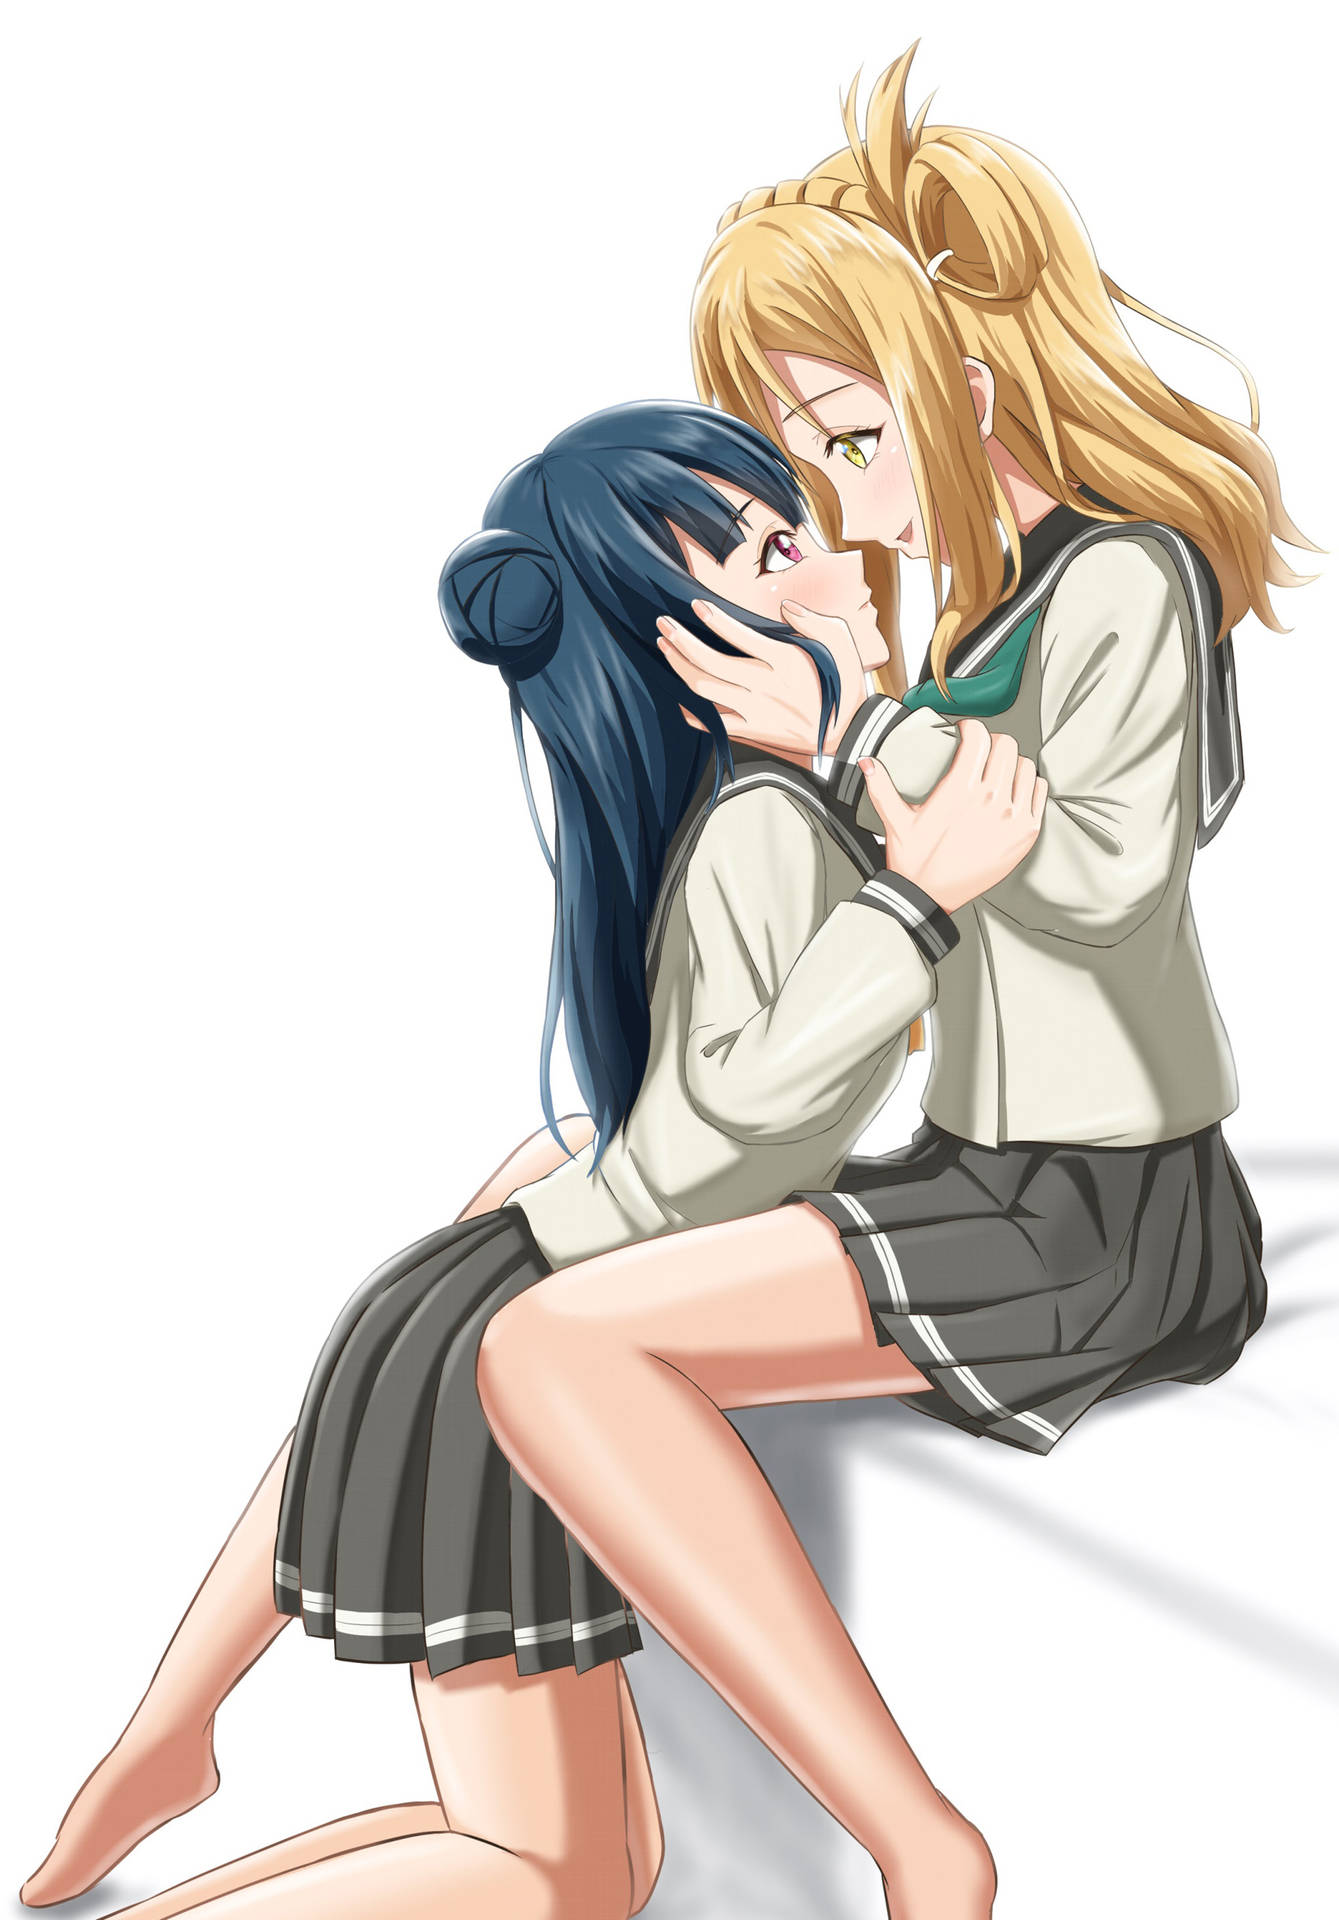 Amorous Anime Lesbian Couple Background